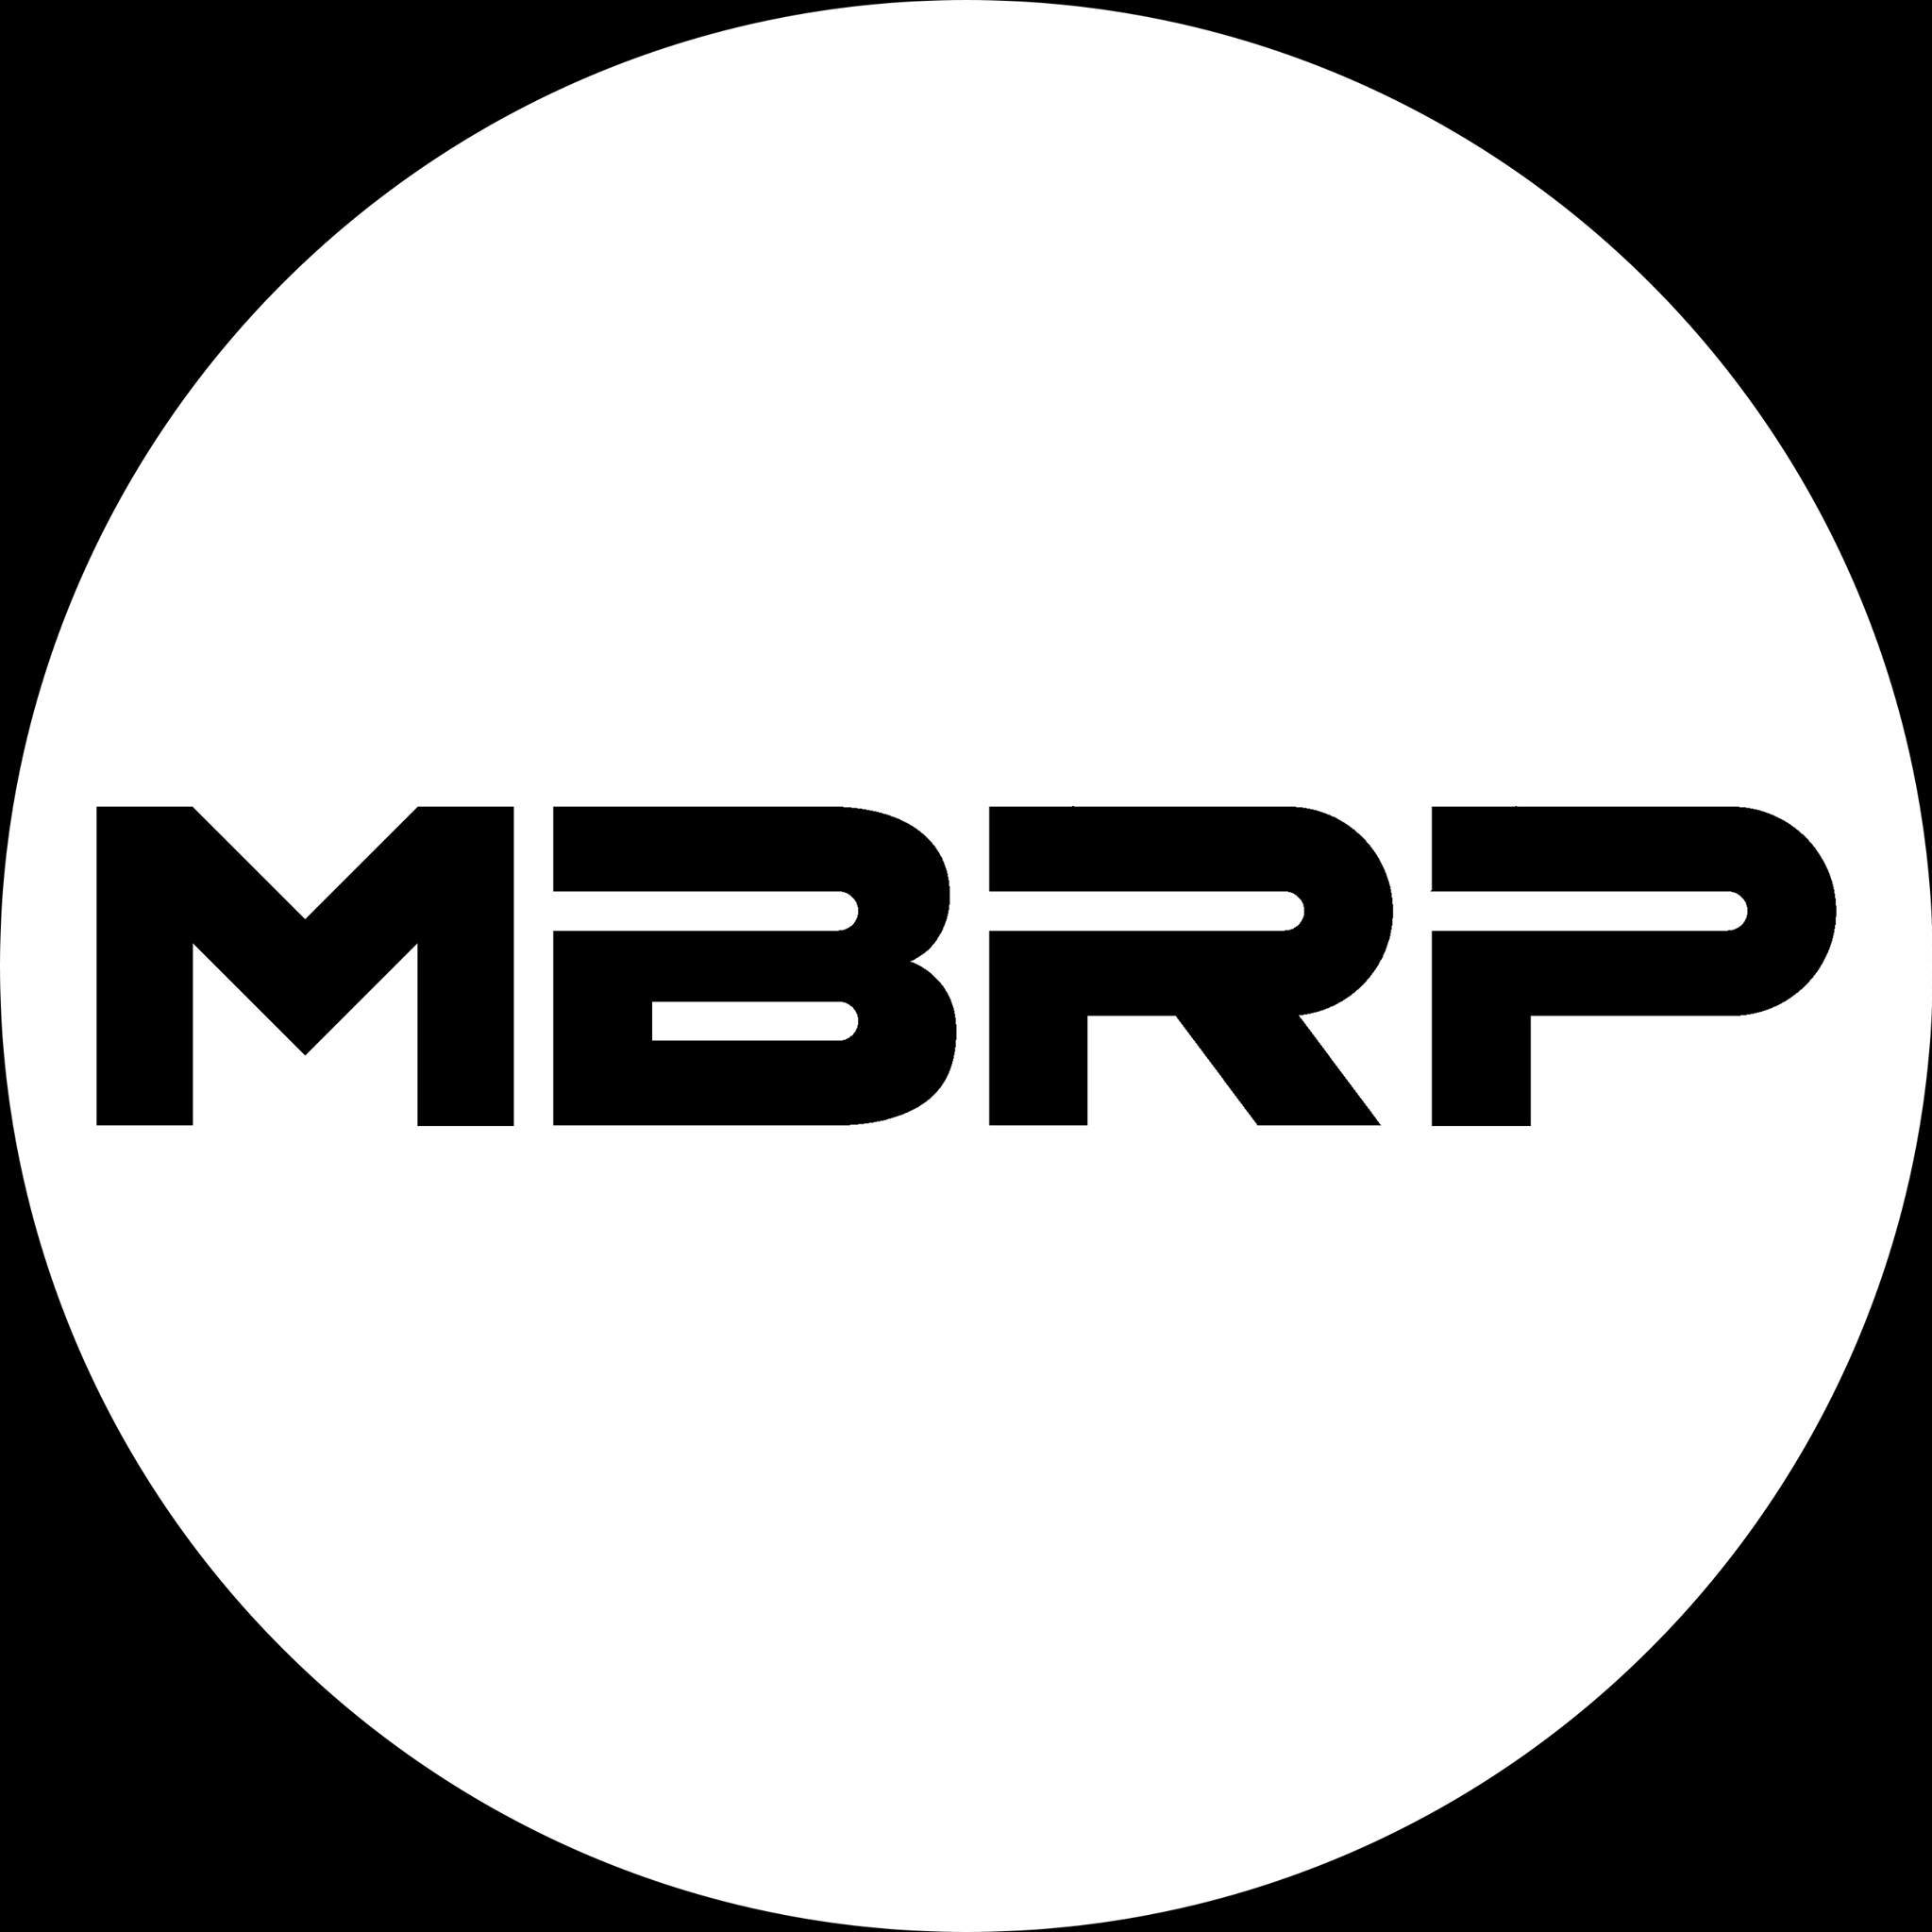 MBRP